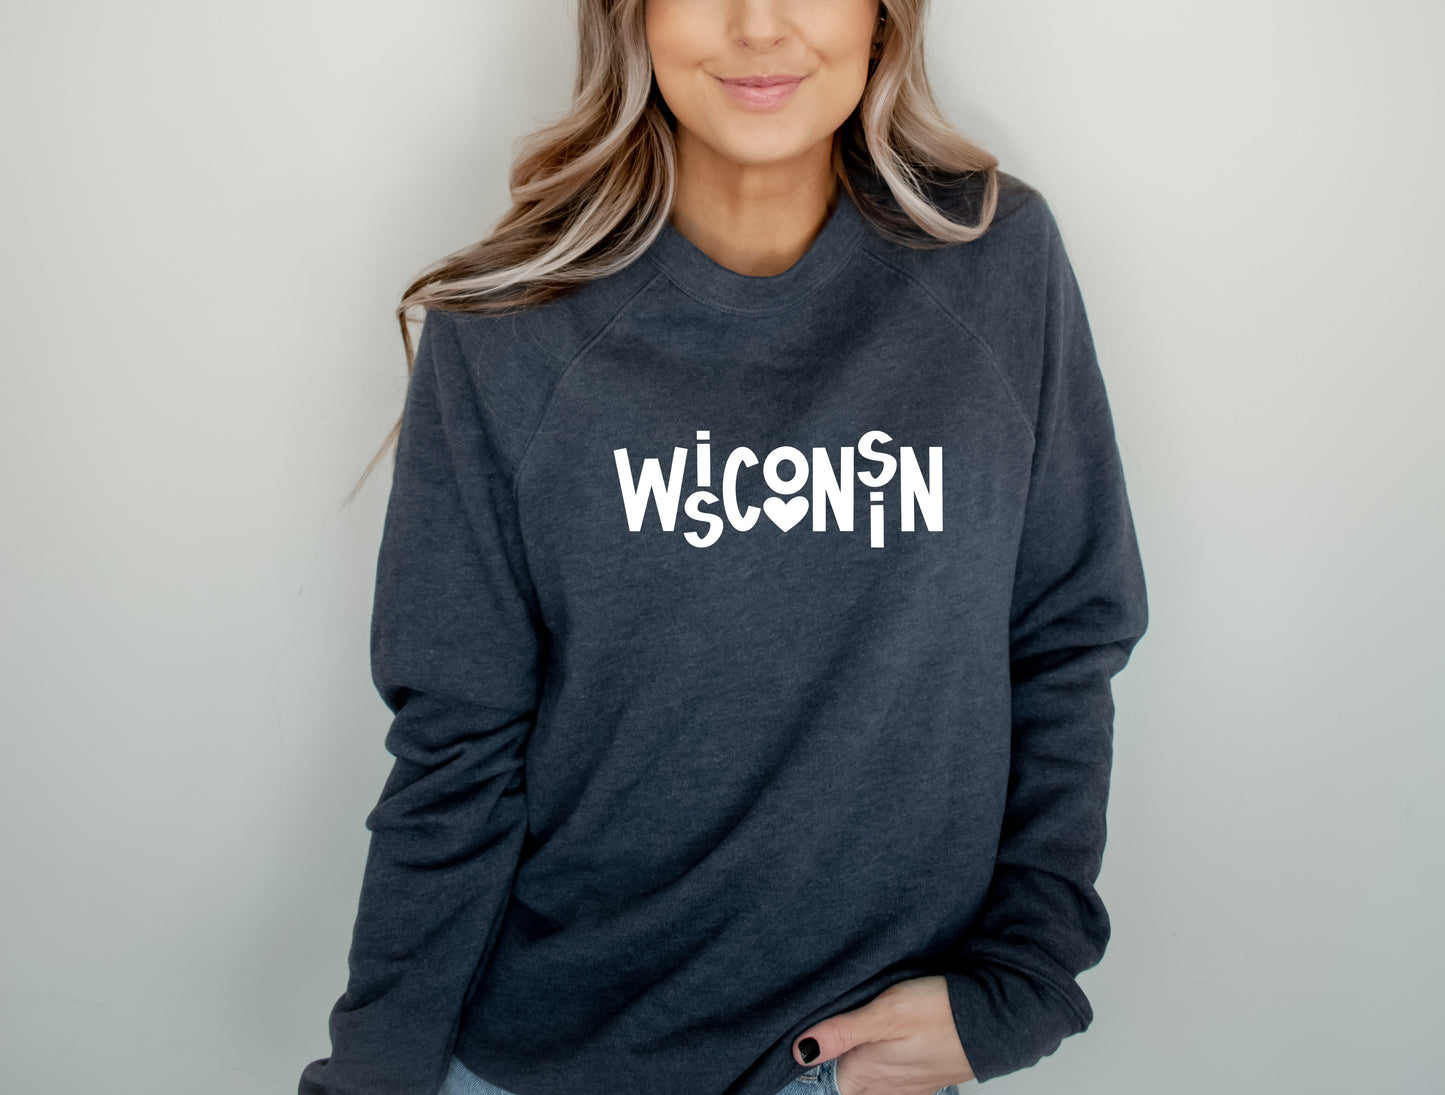 WiScOnSiN Crew Sweatshirt